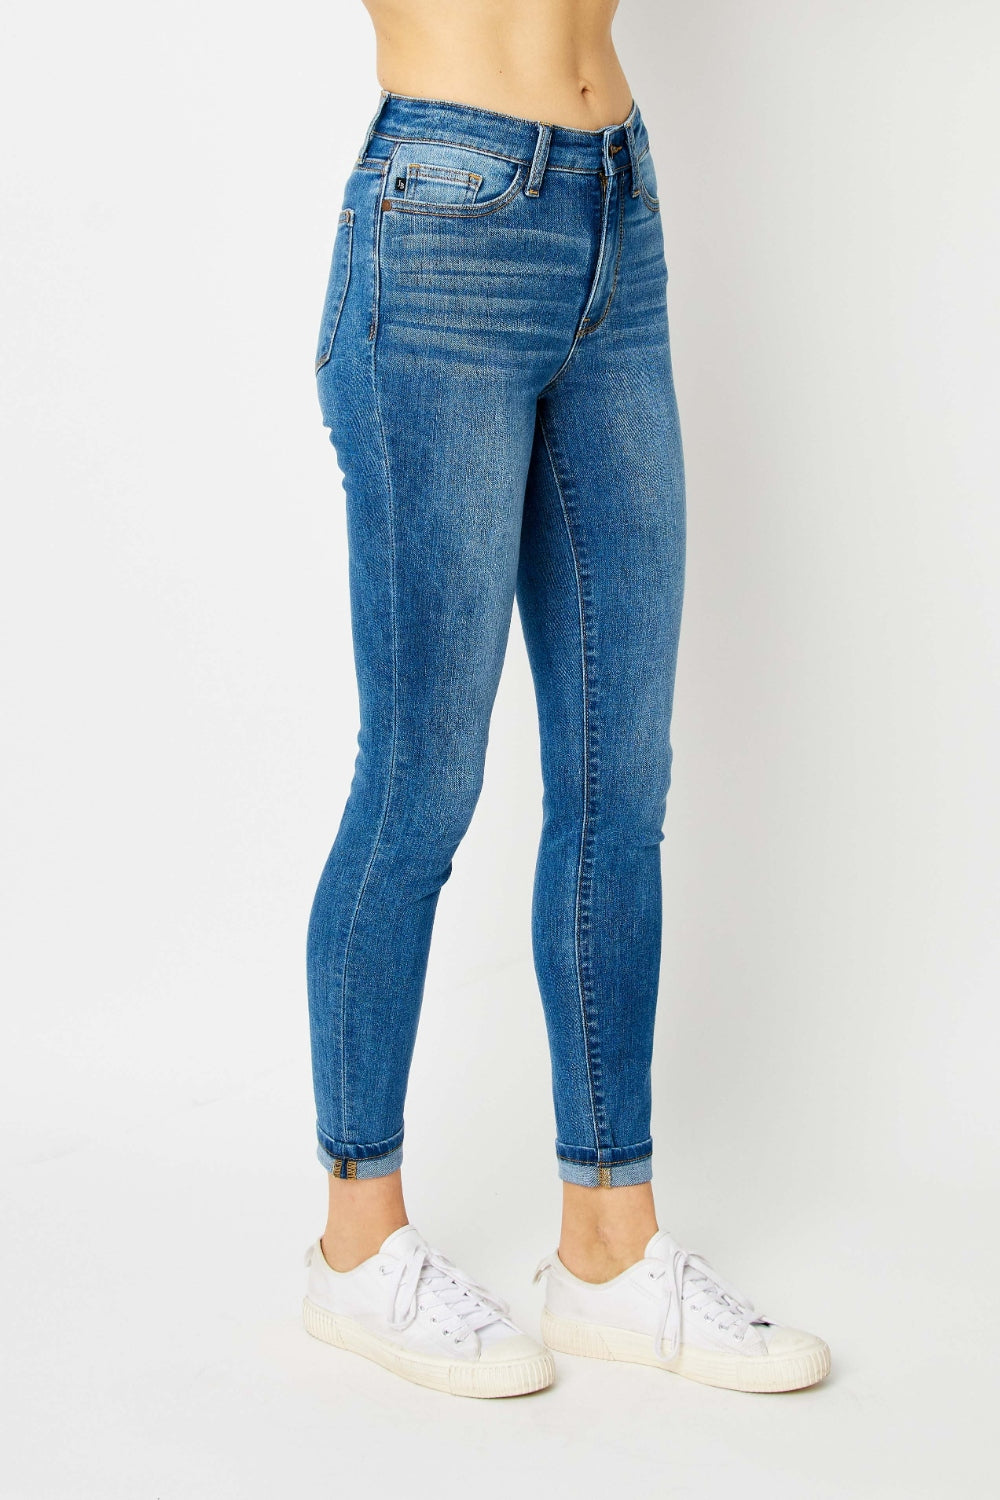 Judy Blue Full Size Cuffed Hem Low Waist Skinny Women Jeans